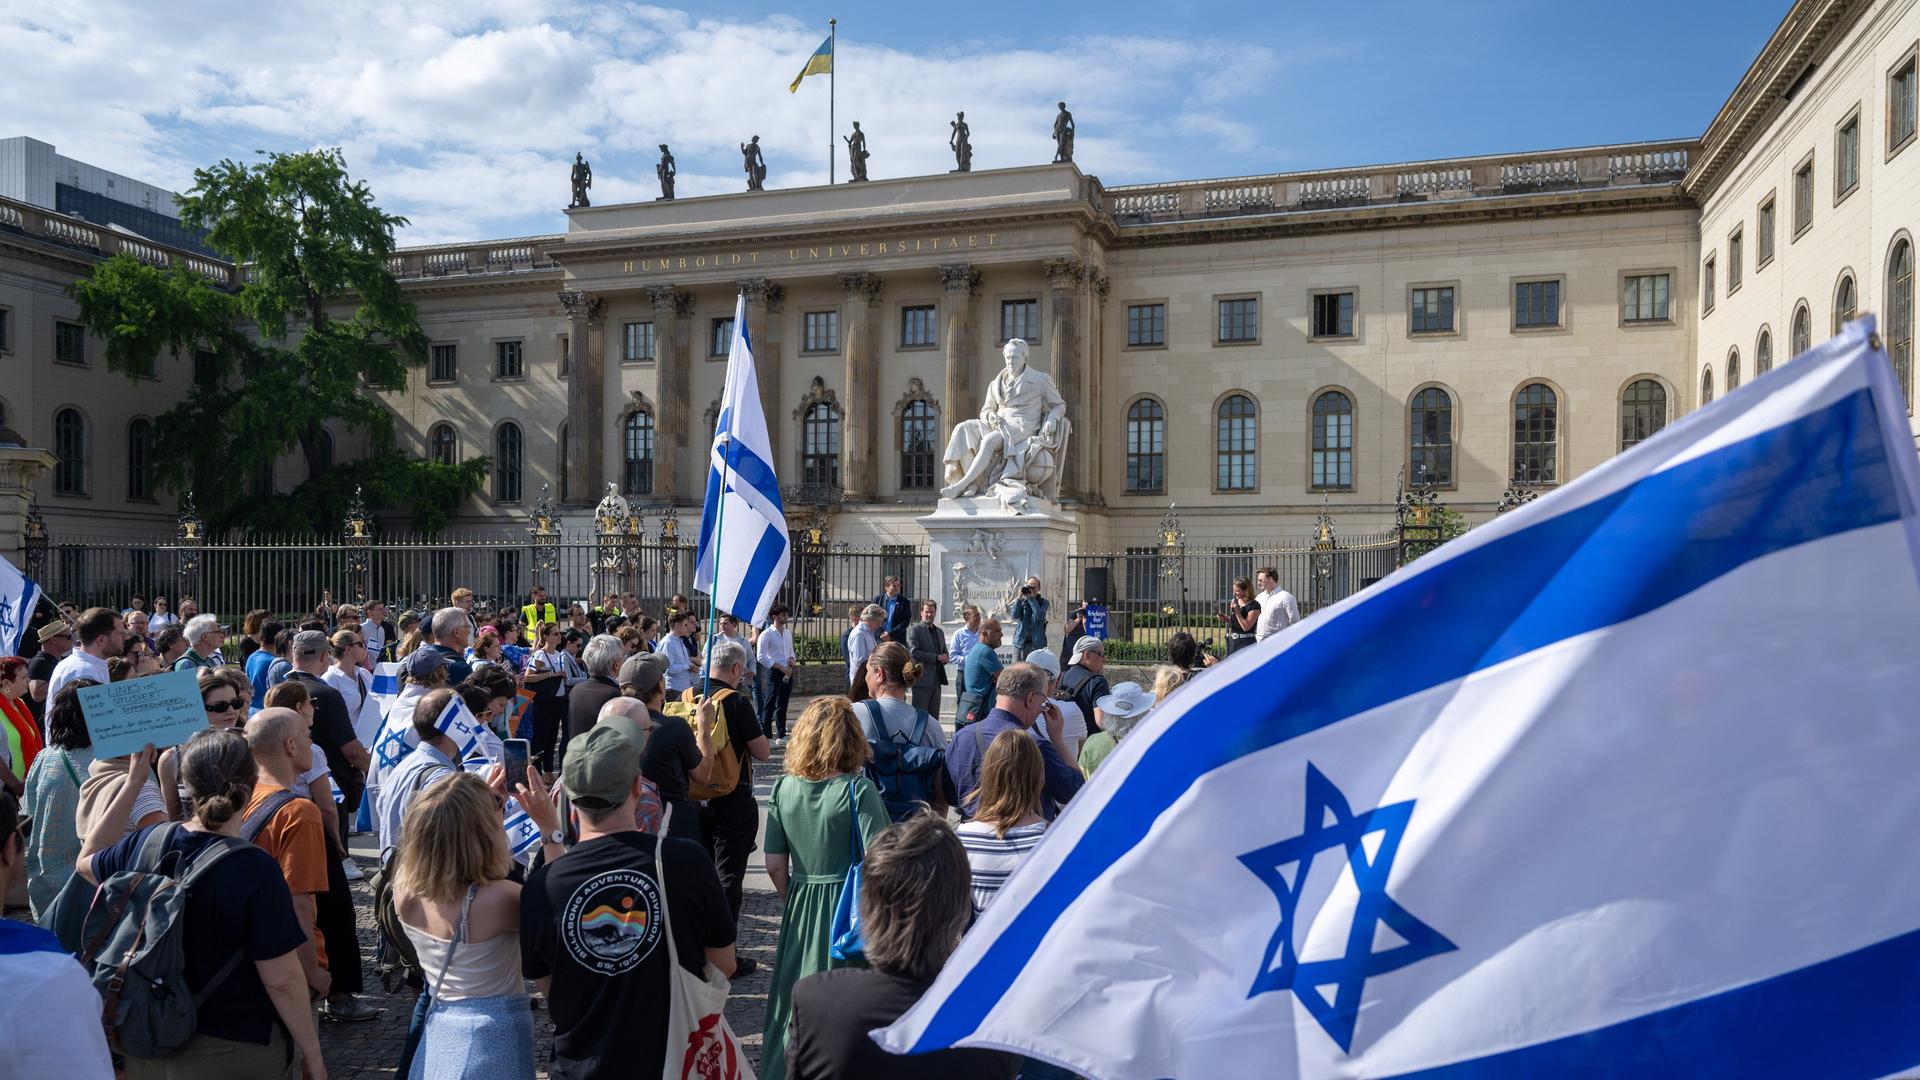 Teilnehmer stehen mit israelischen Fahnen bei einer Kundgebung vor der Humboldt-Universität in Berlin.